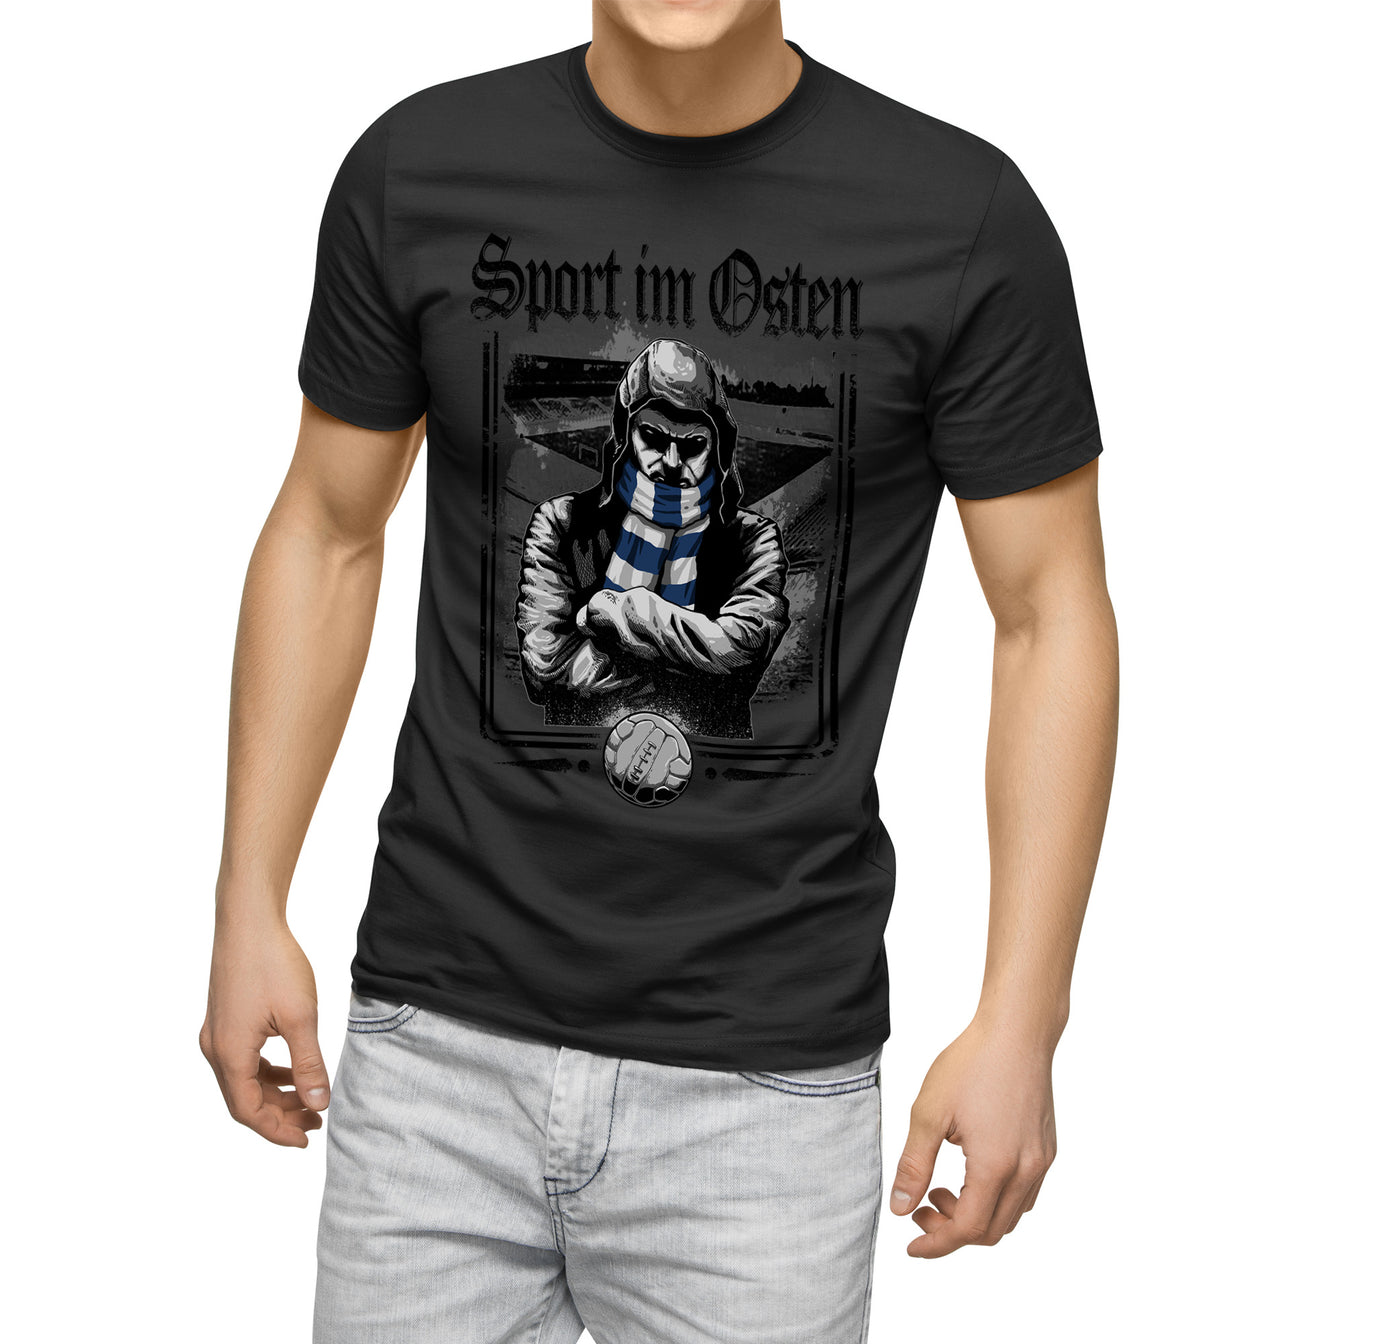 Shirt "Sport im Osten" Blue Scarf